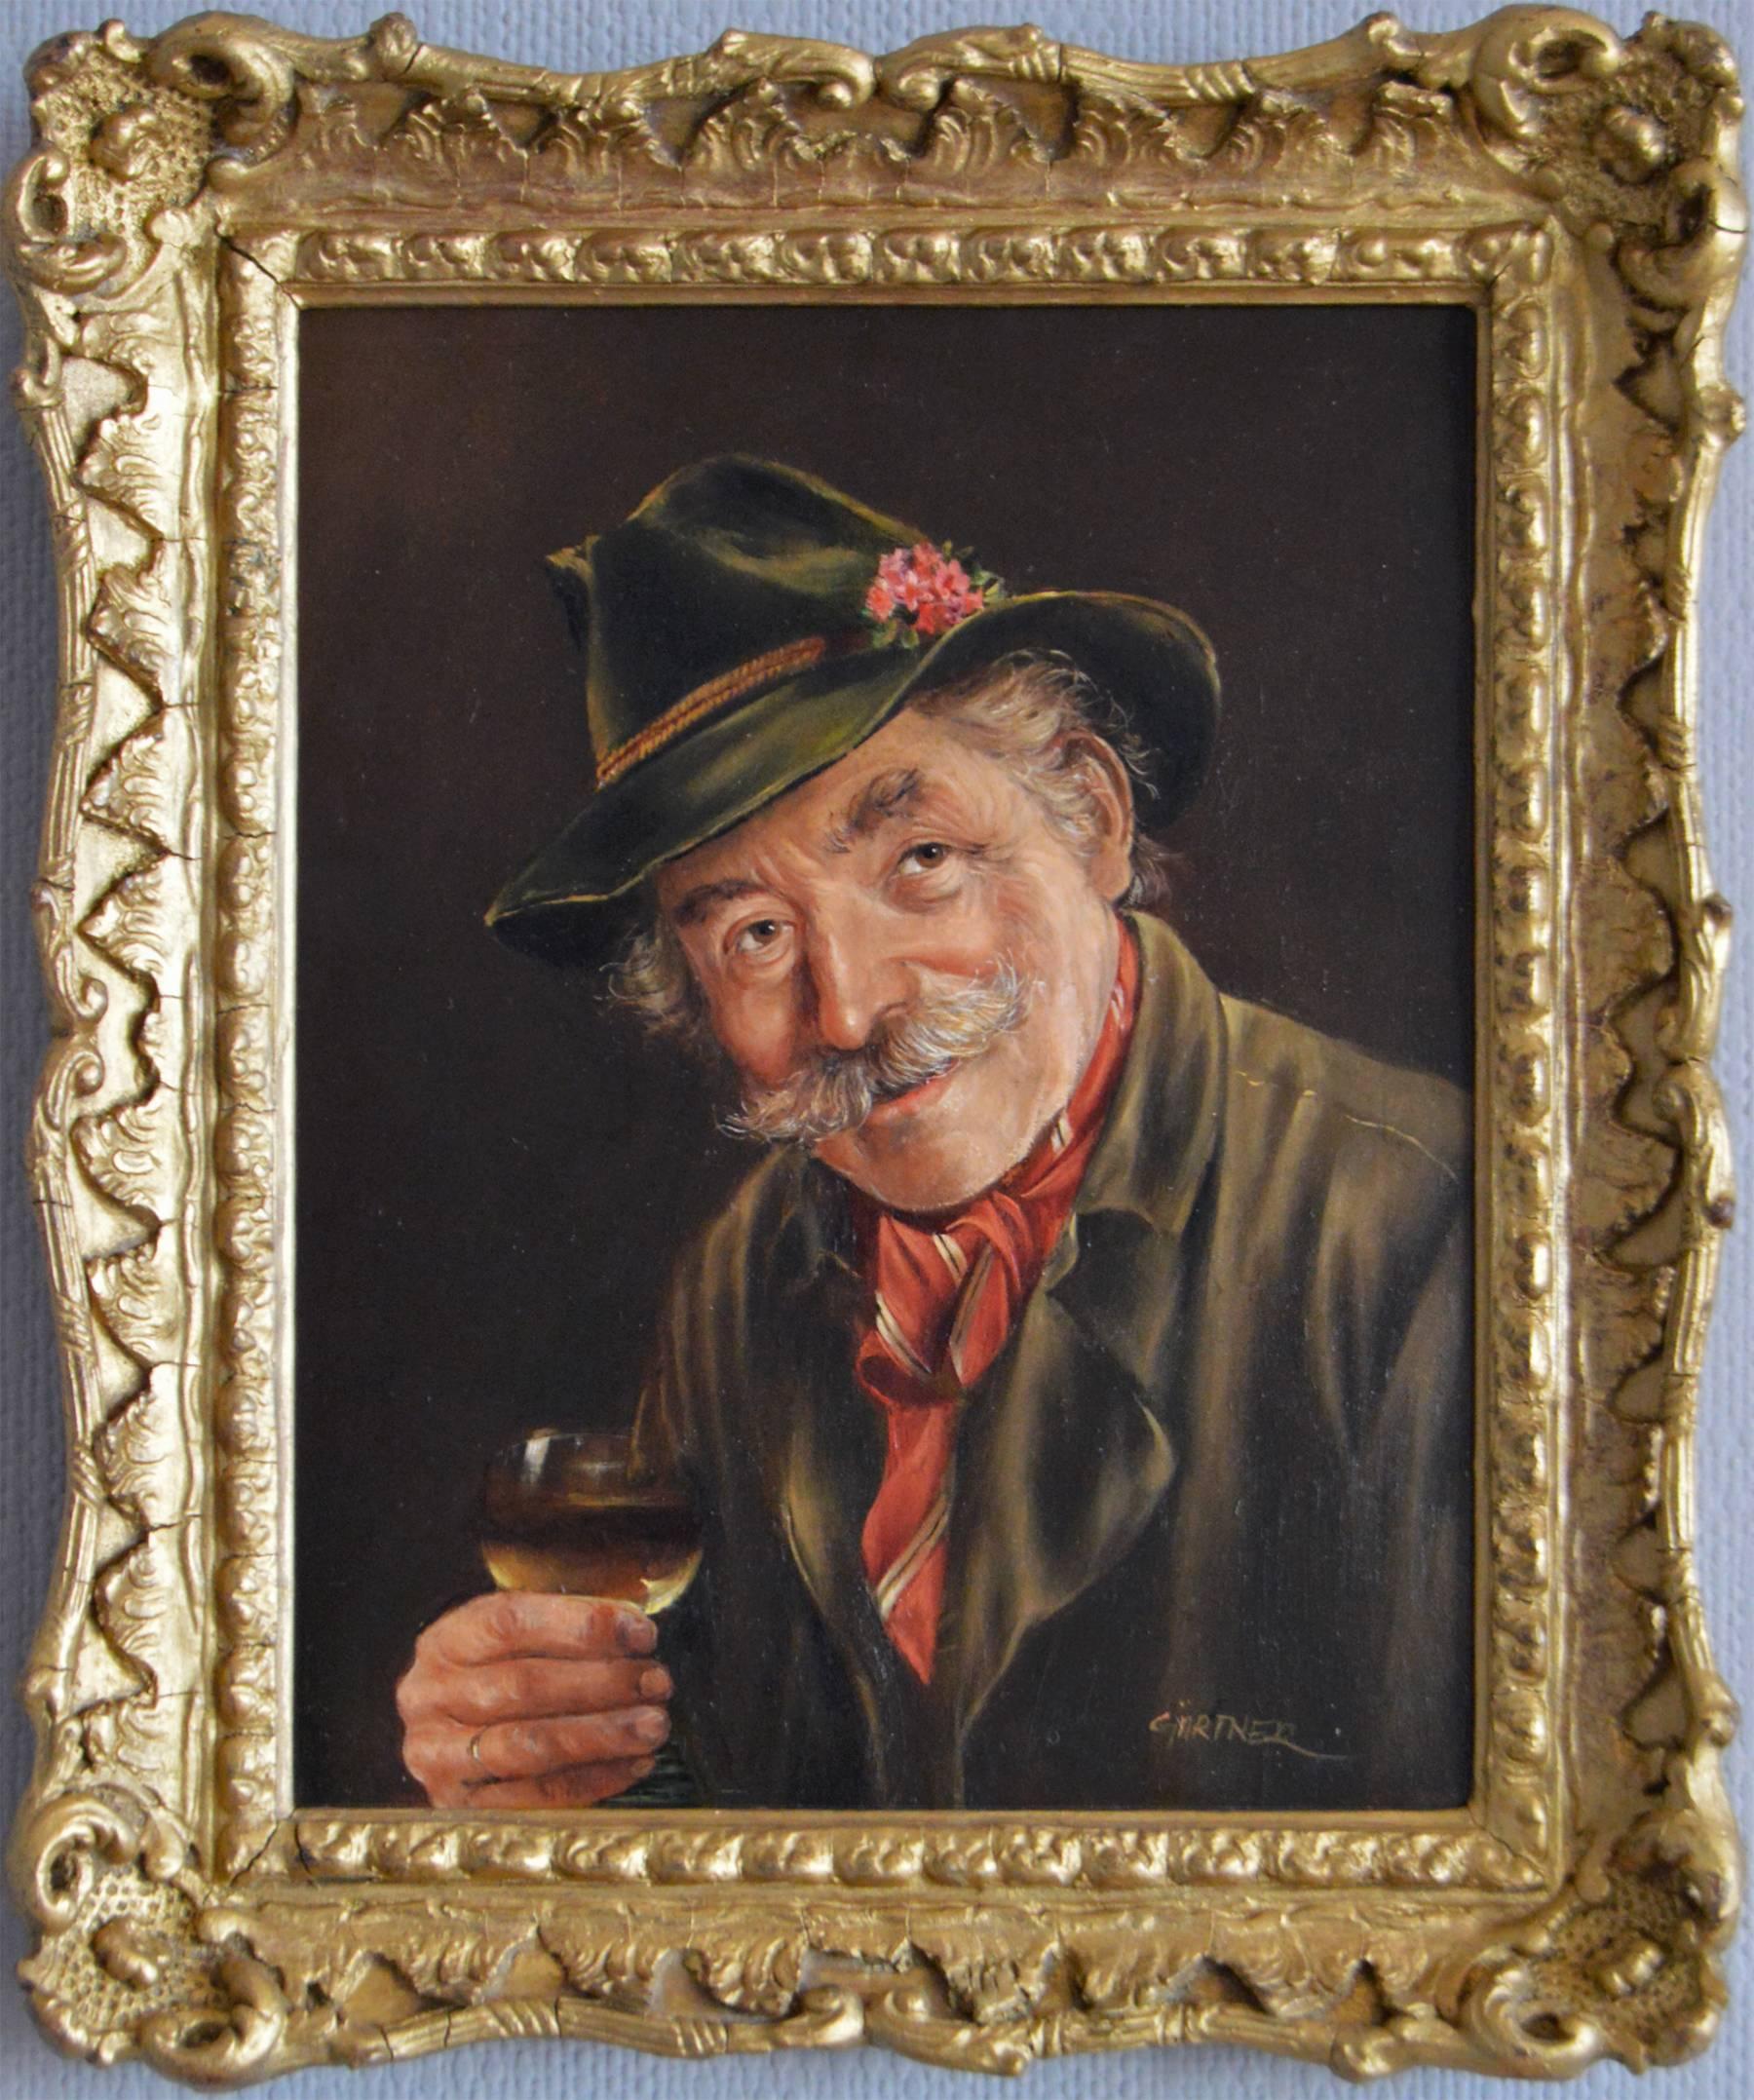 Hermine Gartner Portrait Painting - Glass of Moselle, oil on panel 